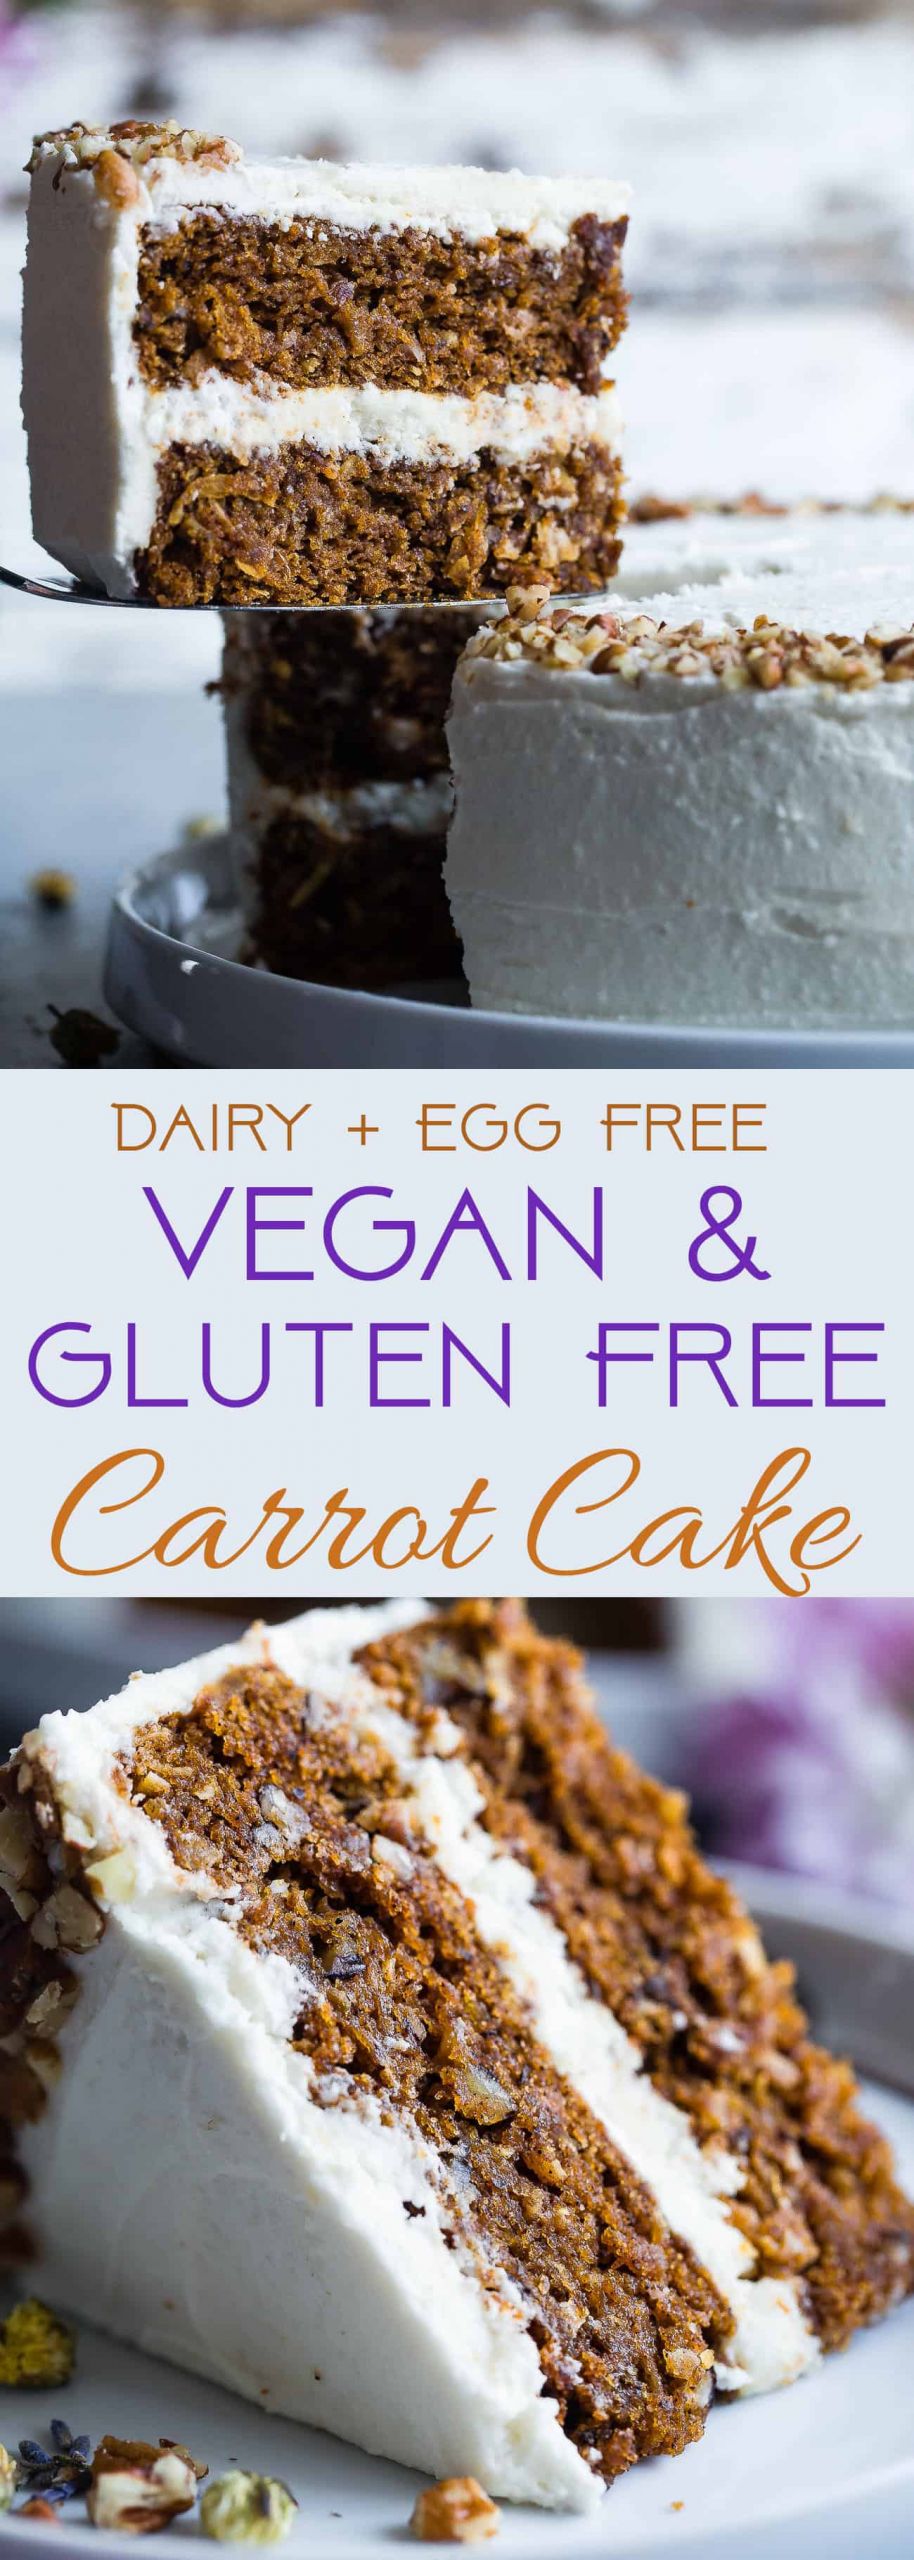 Gluten Free Dairy Free Cupcakes
 Vegan Gluten Free Dairy Free Carrot Cake